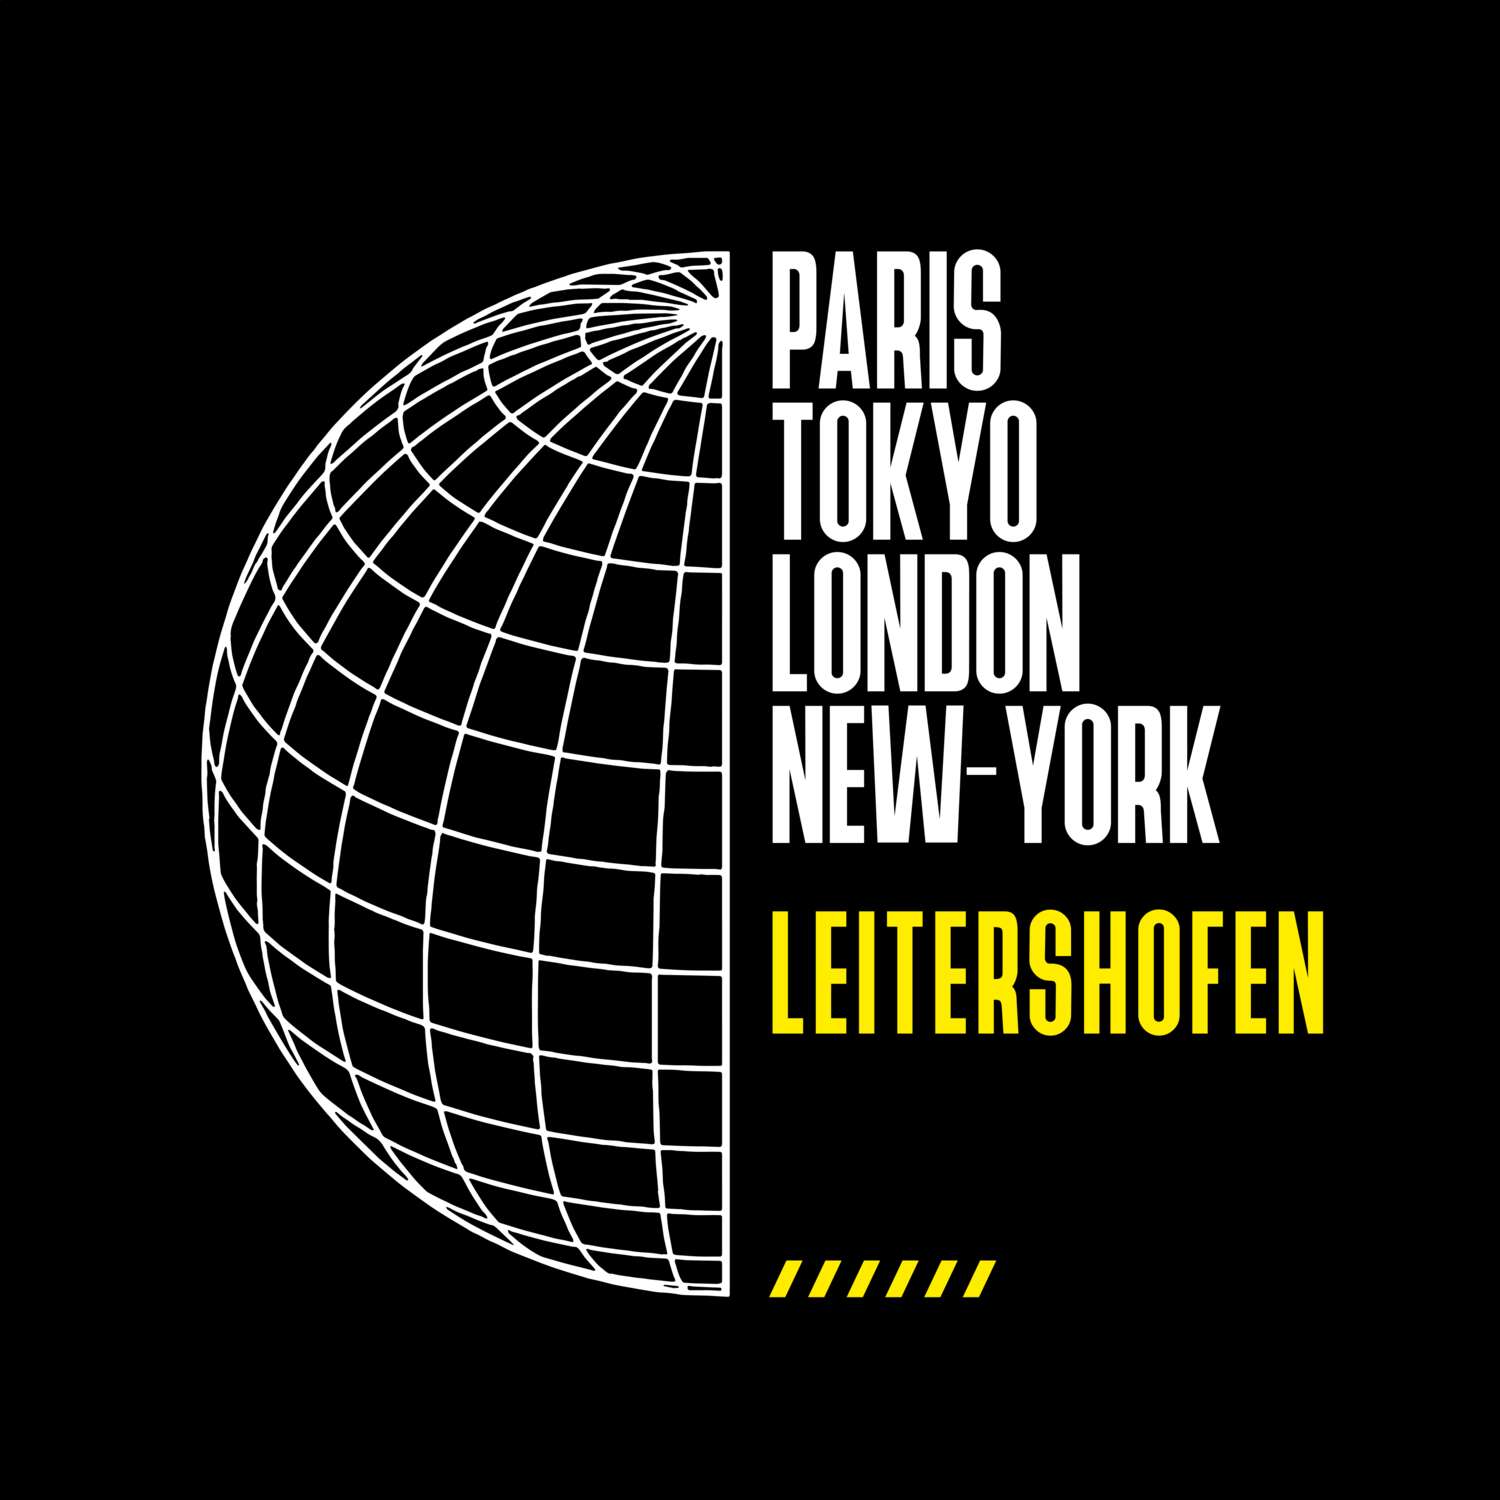 Leitershofen T-Shirt »Paris Tokyo London«